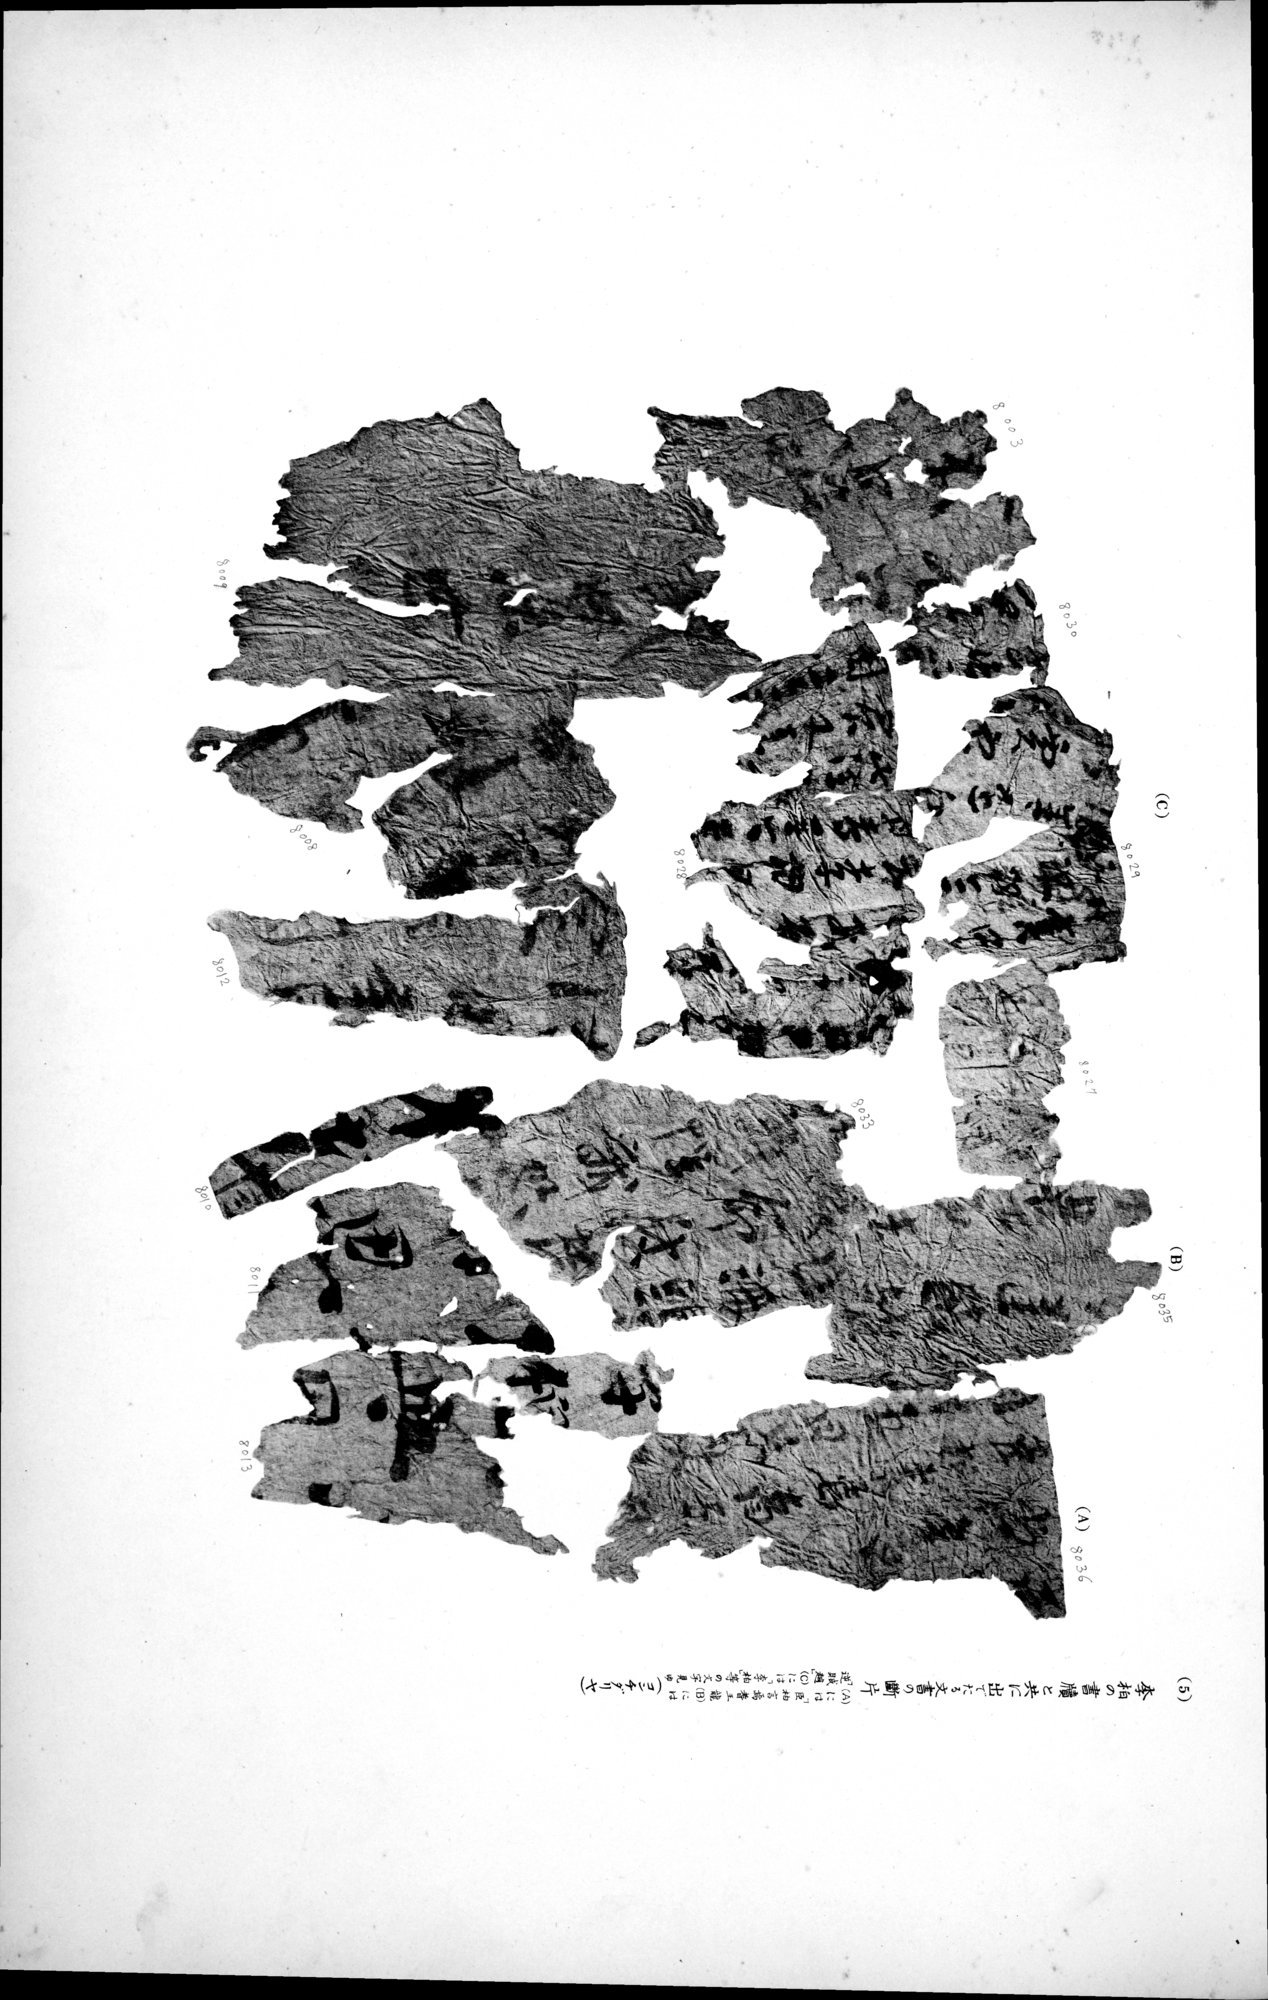 西域考古図譜 : vol.2 / Page 183 (Grayscale High Resolution Image)